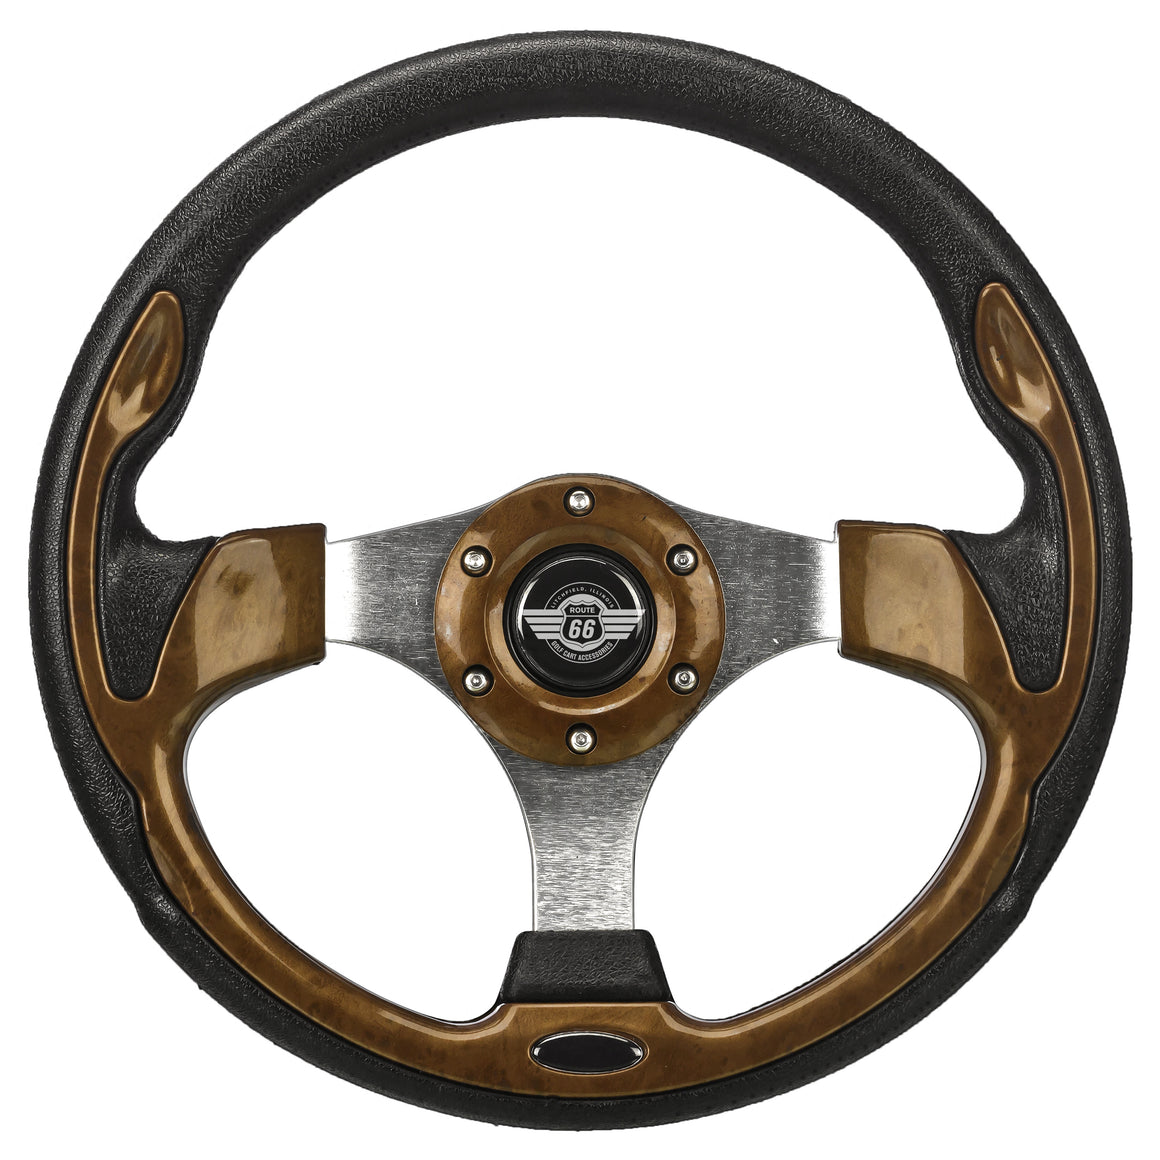 12.5" Wood Grain Steering Wheel for Club Car